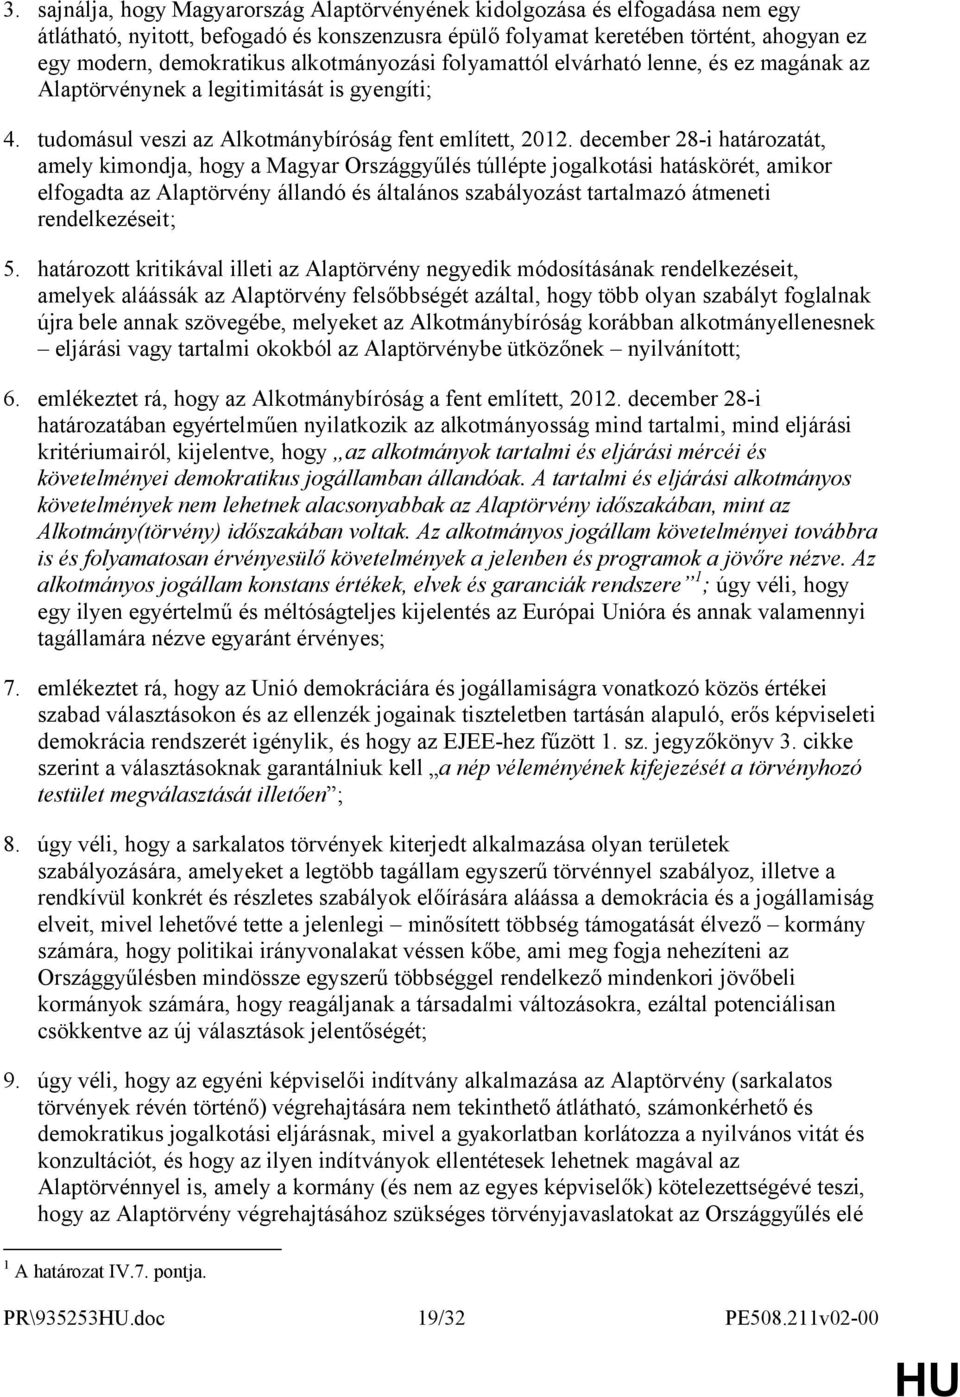 december 28-i határozatát, amely kimondja, hogy a Magyar Országgyűlés túllépte jogalkotási hatáskörét, amikor elfogadta az Alaptörvény állandó és általános szabályozást tartalmazó átmeneti